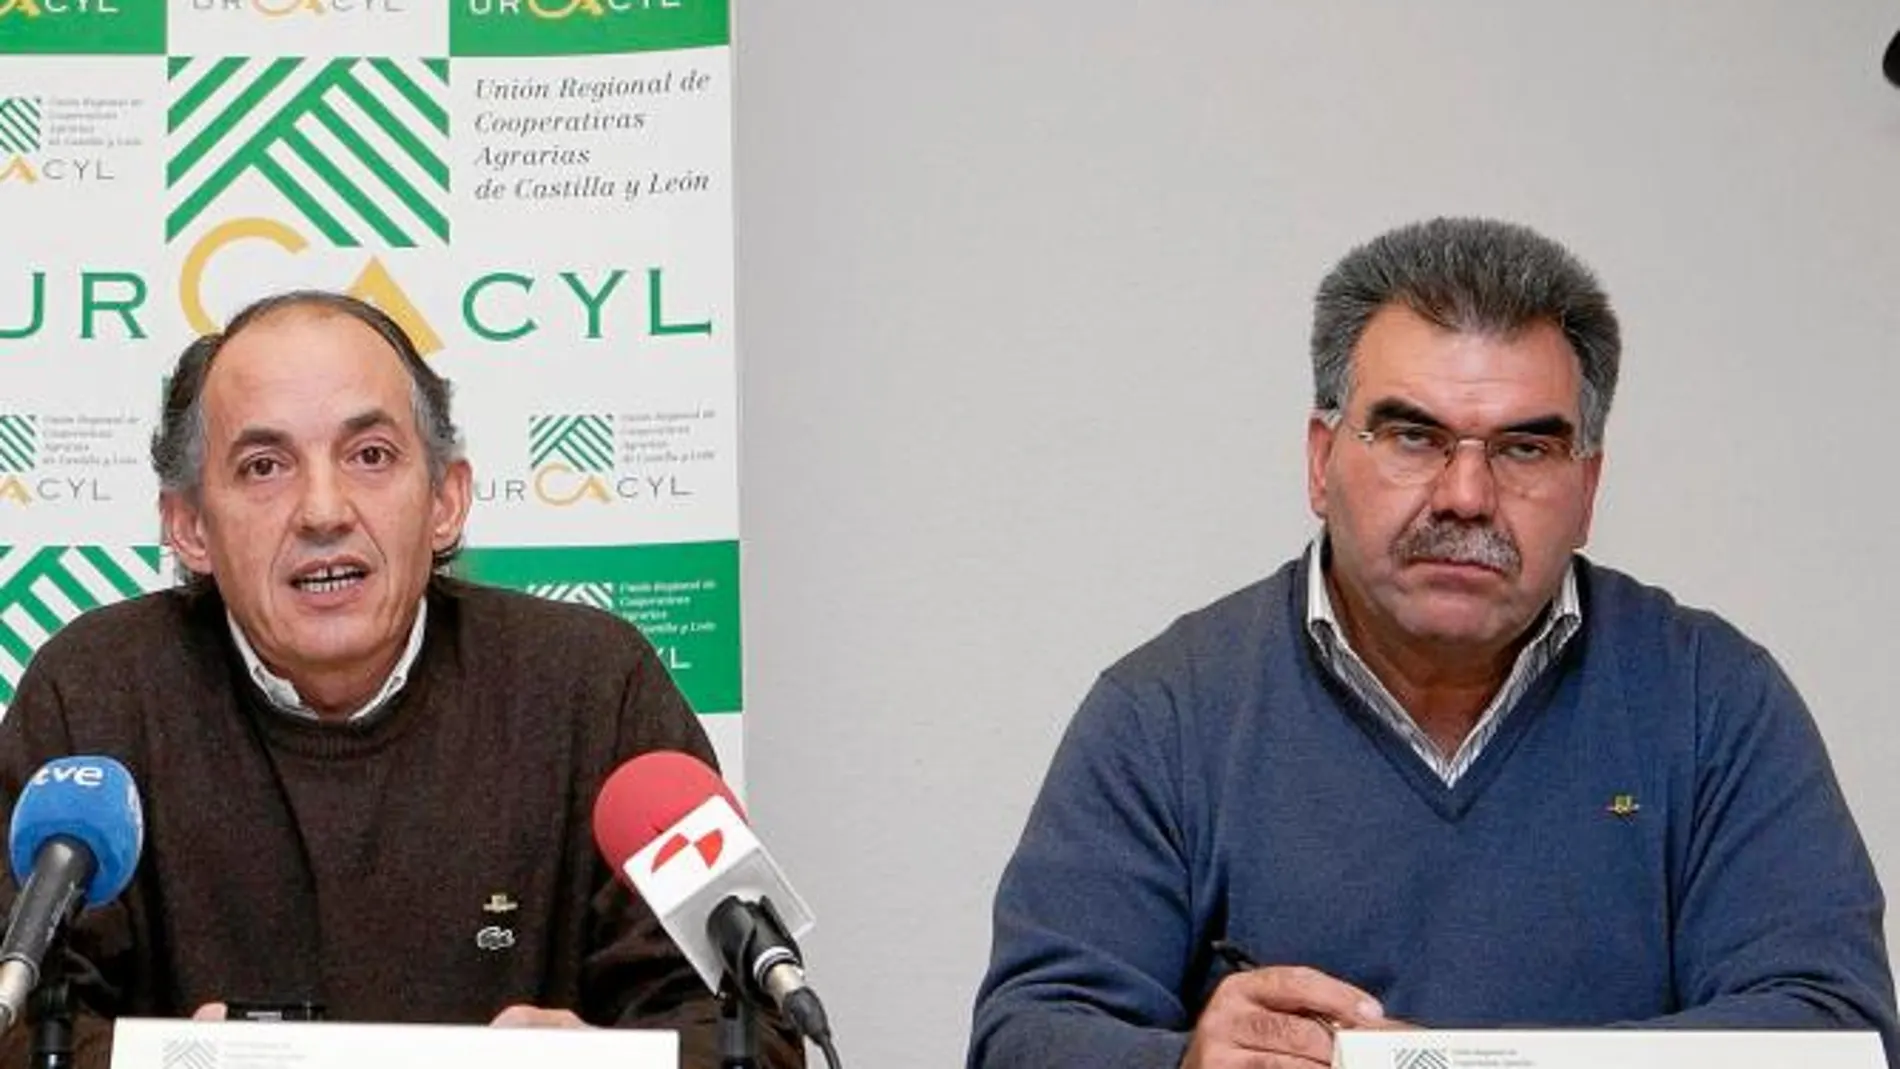 Jerónimo Lozano y Juan Bravo, gerente y responsable del sector vacuno de Urcacyl, califican la propuesta láctea de la Comisión Europea